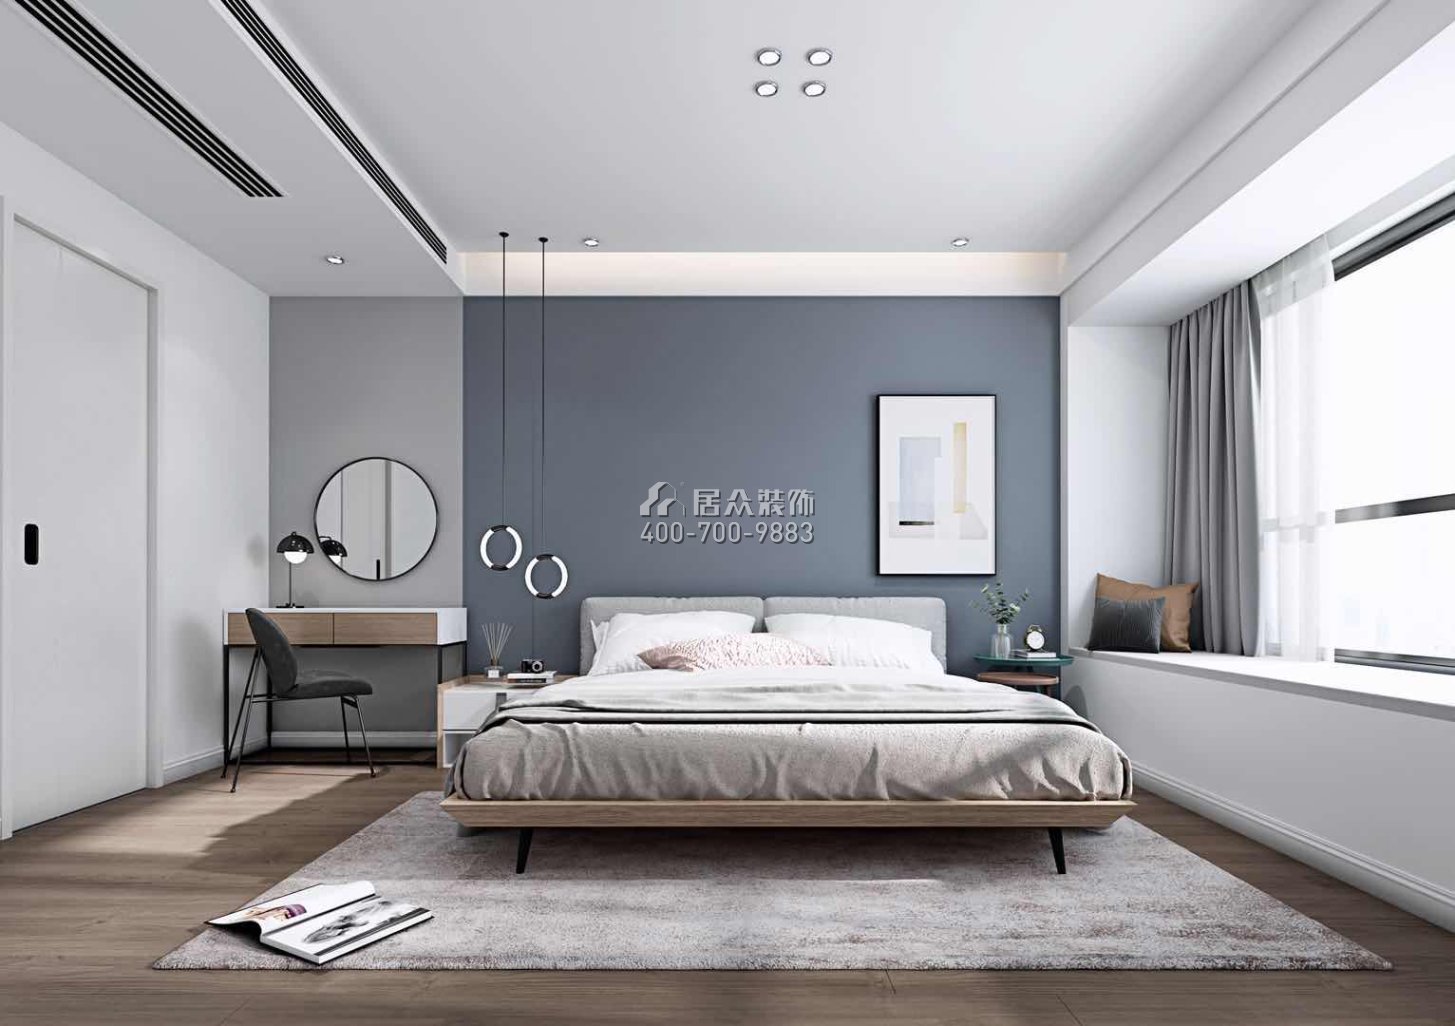 華發世紀城四期130平方米現代簡約風格平層戶型臥室裝修效果圖